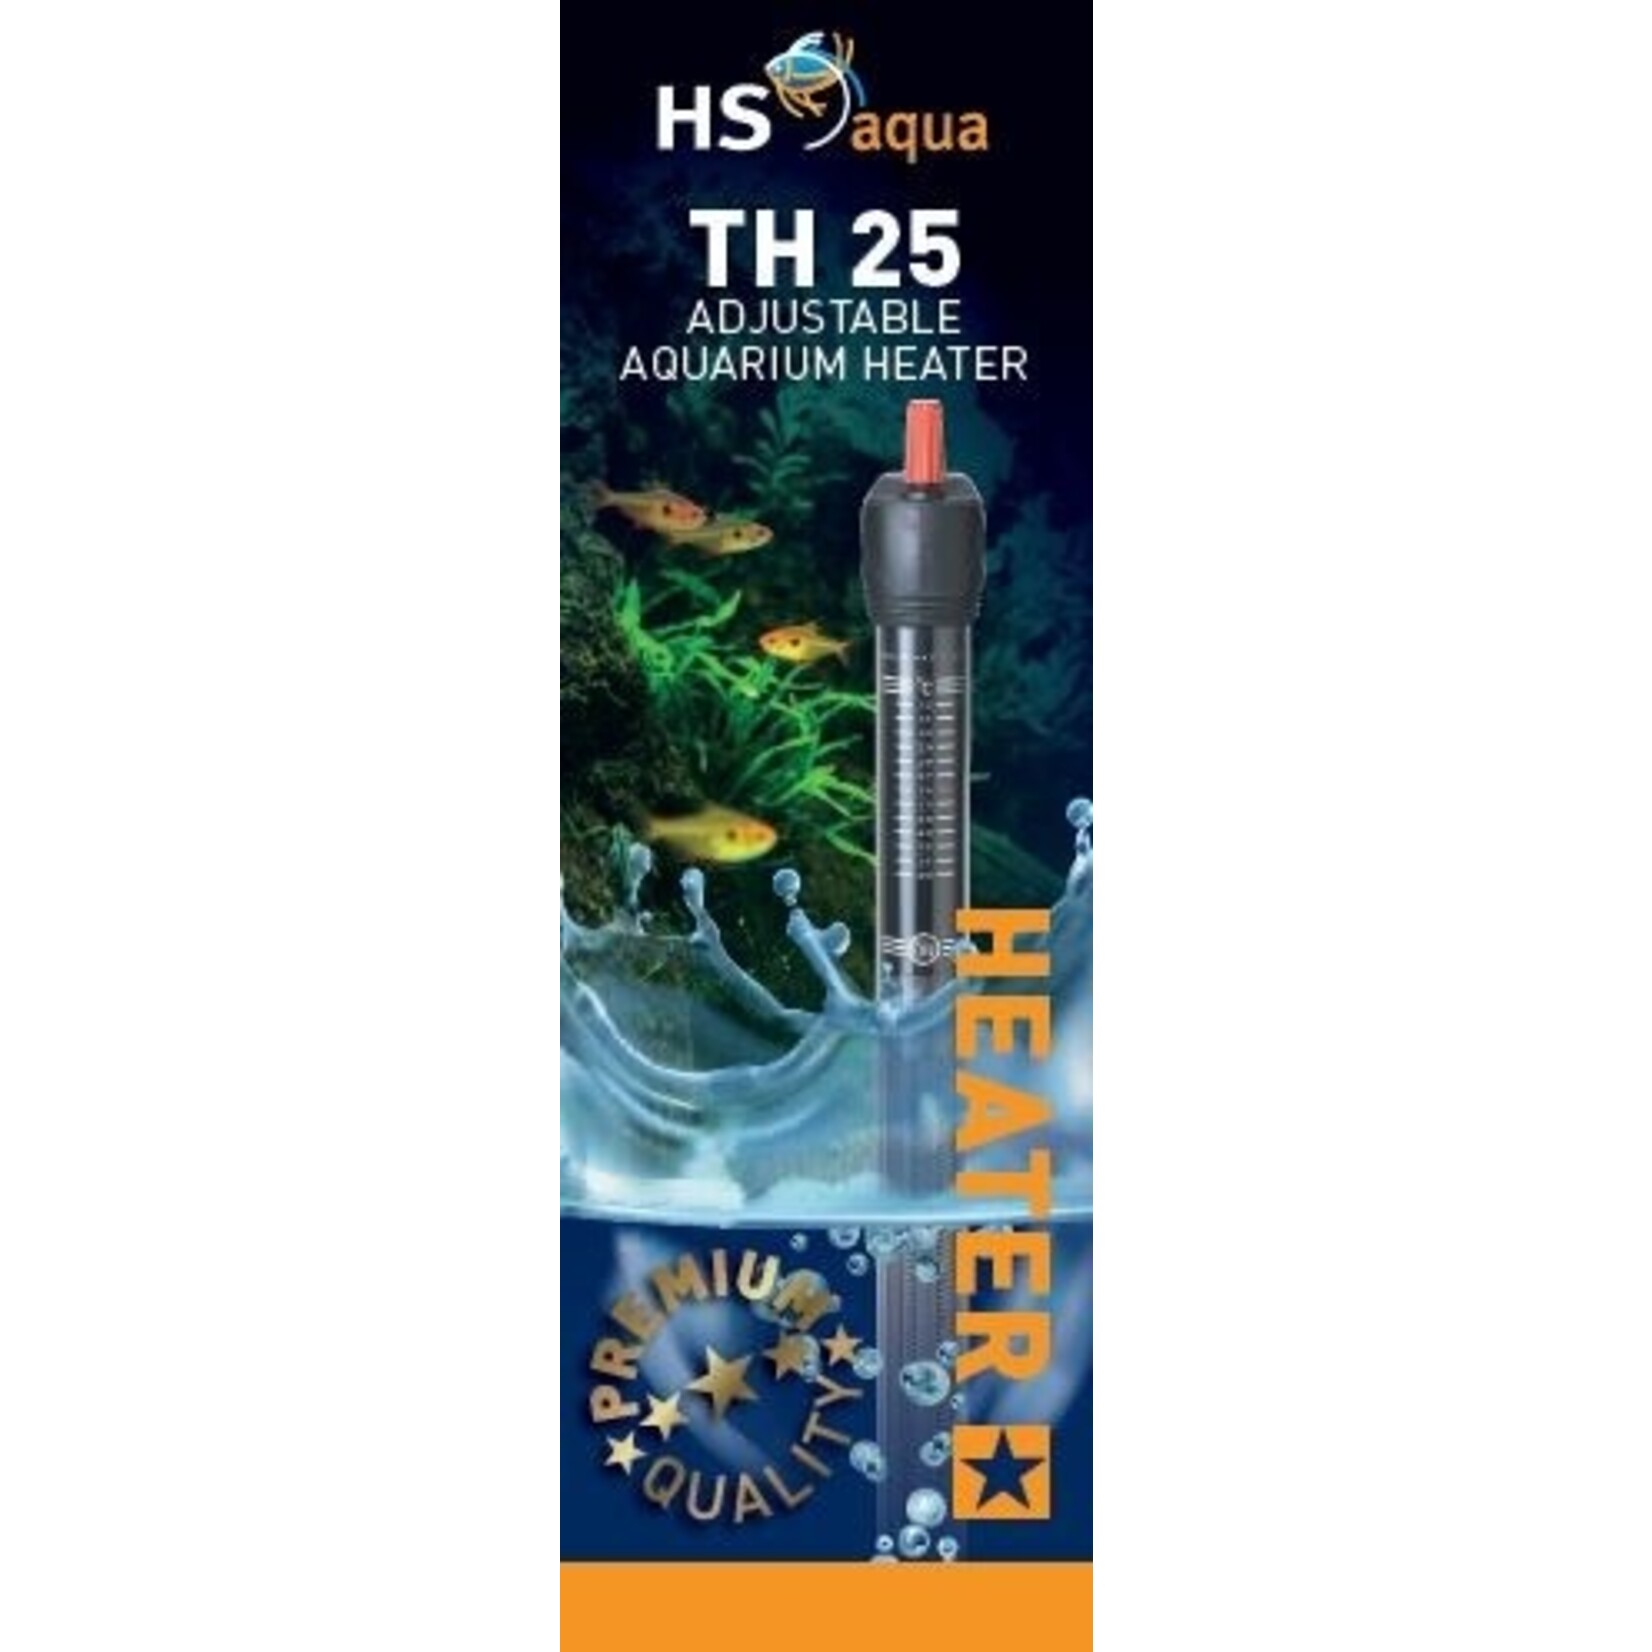 HS Aqua Glass aquarium heater & protector th-25